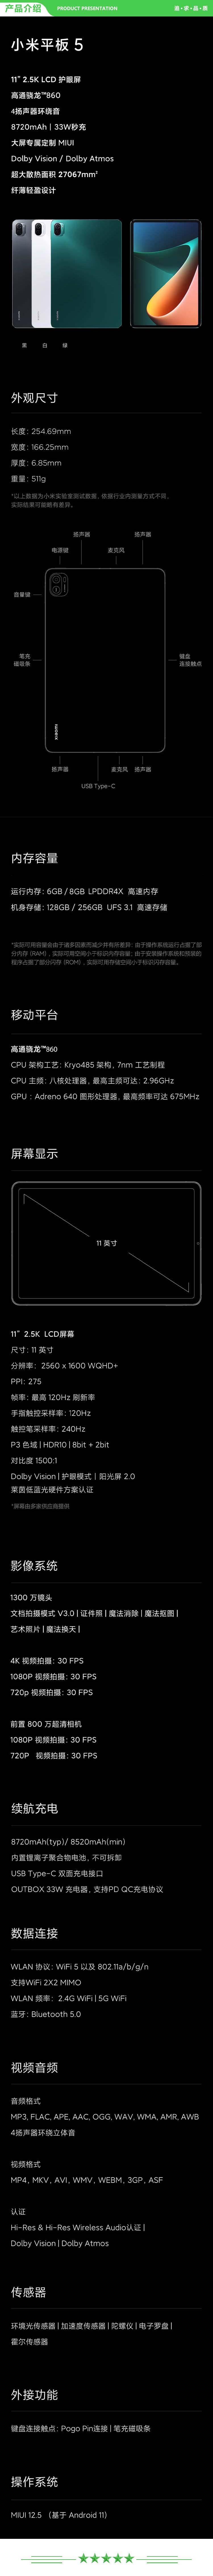 小米 xiaomi 平板5 平板电脑（11英寸2.5K高清 120Hz 骁龙860 8G+256GB 33W快充 杜比影音娱乐办公 白色）.jpg